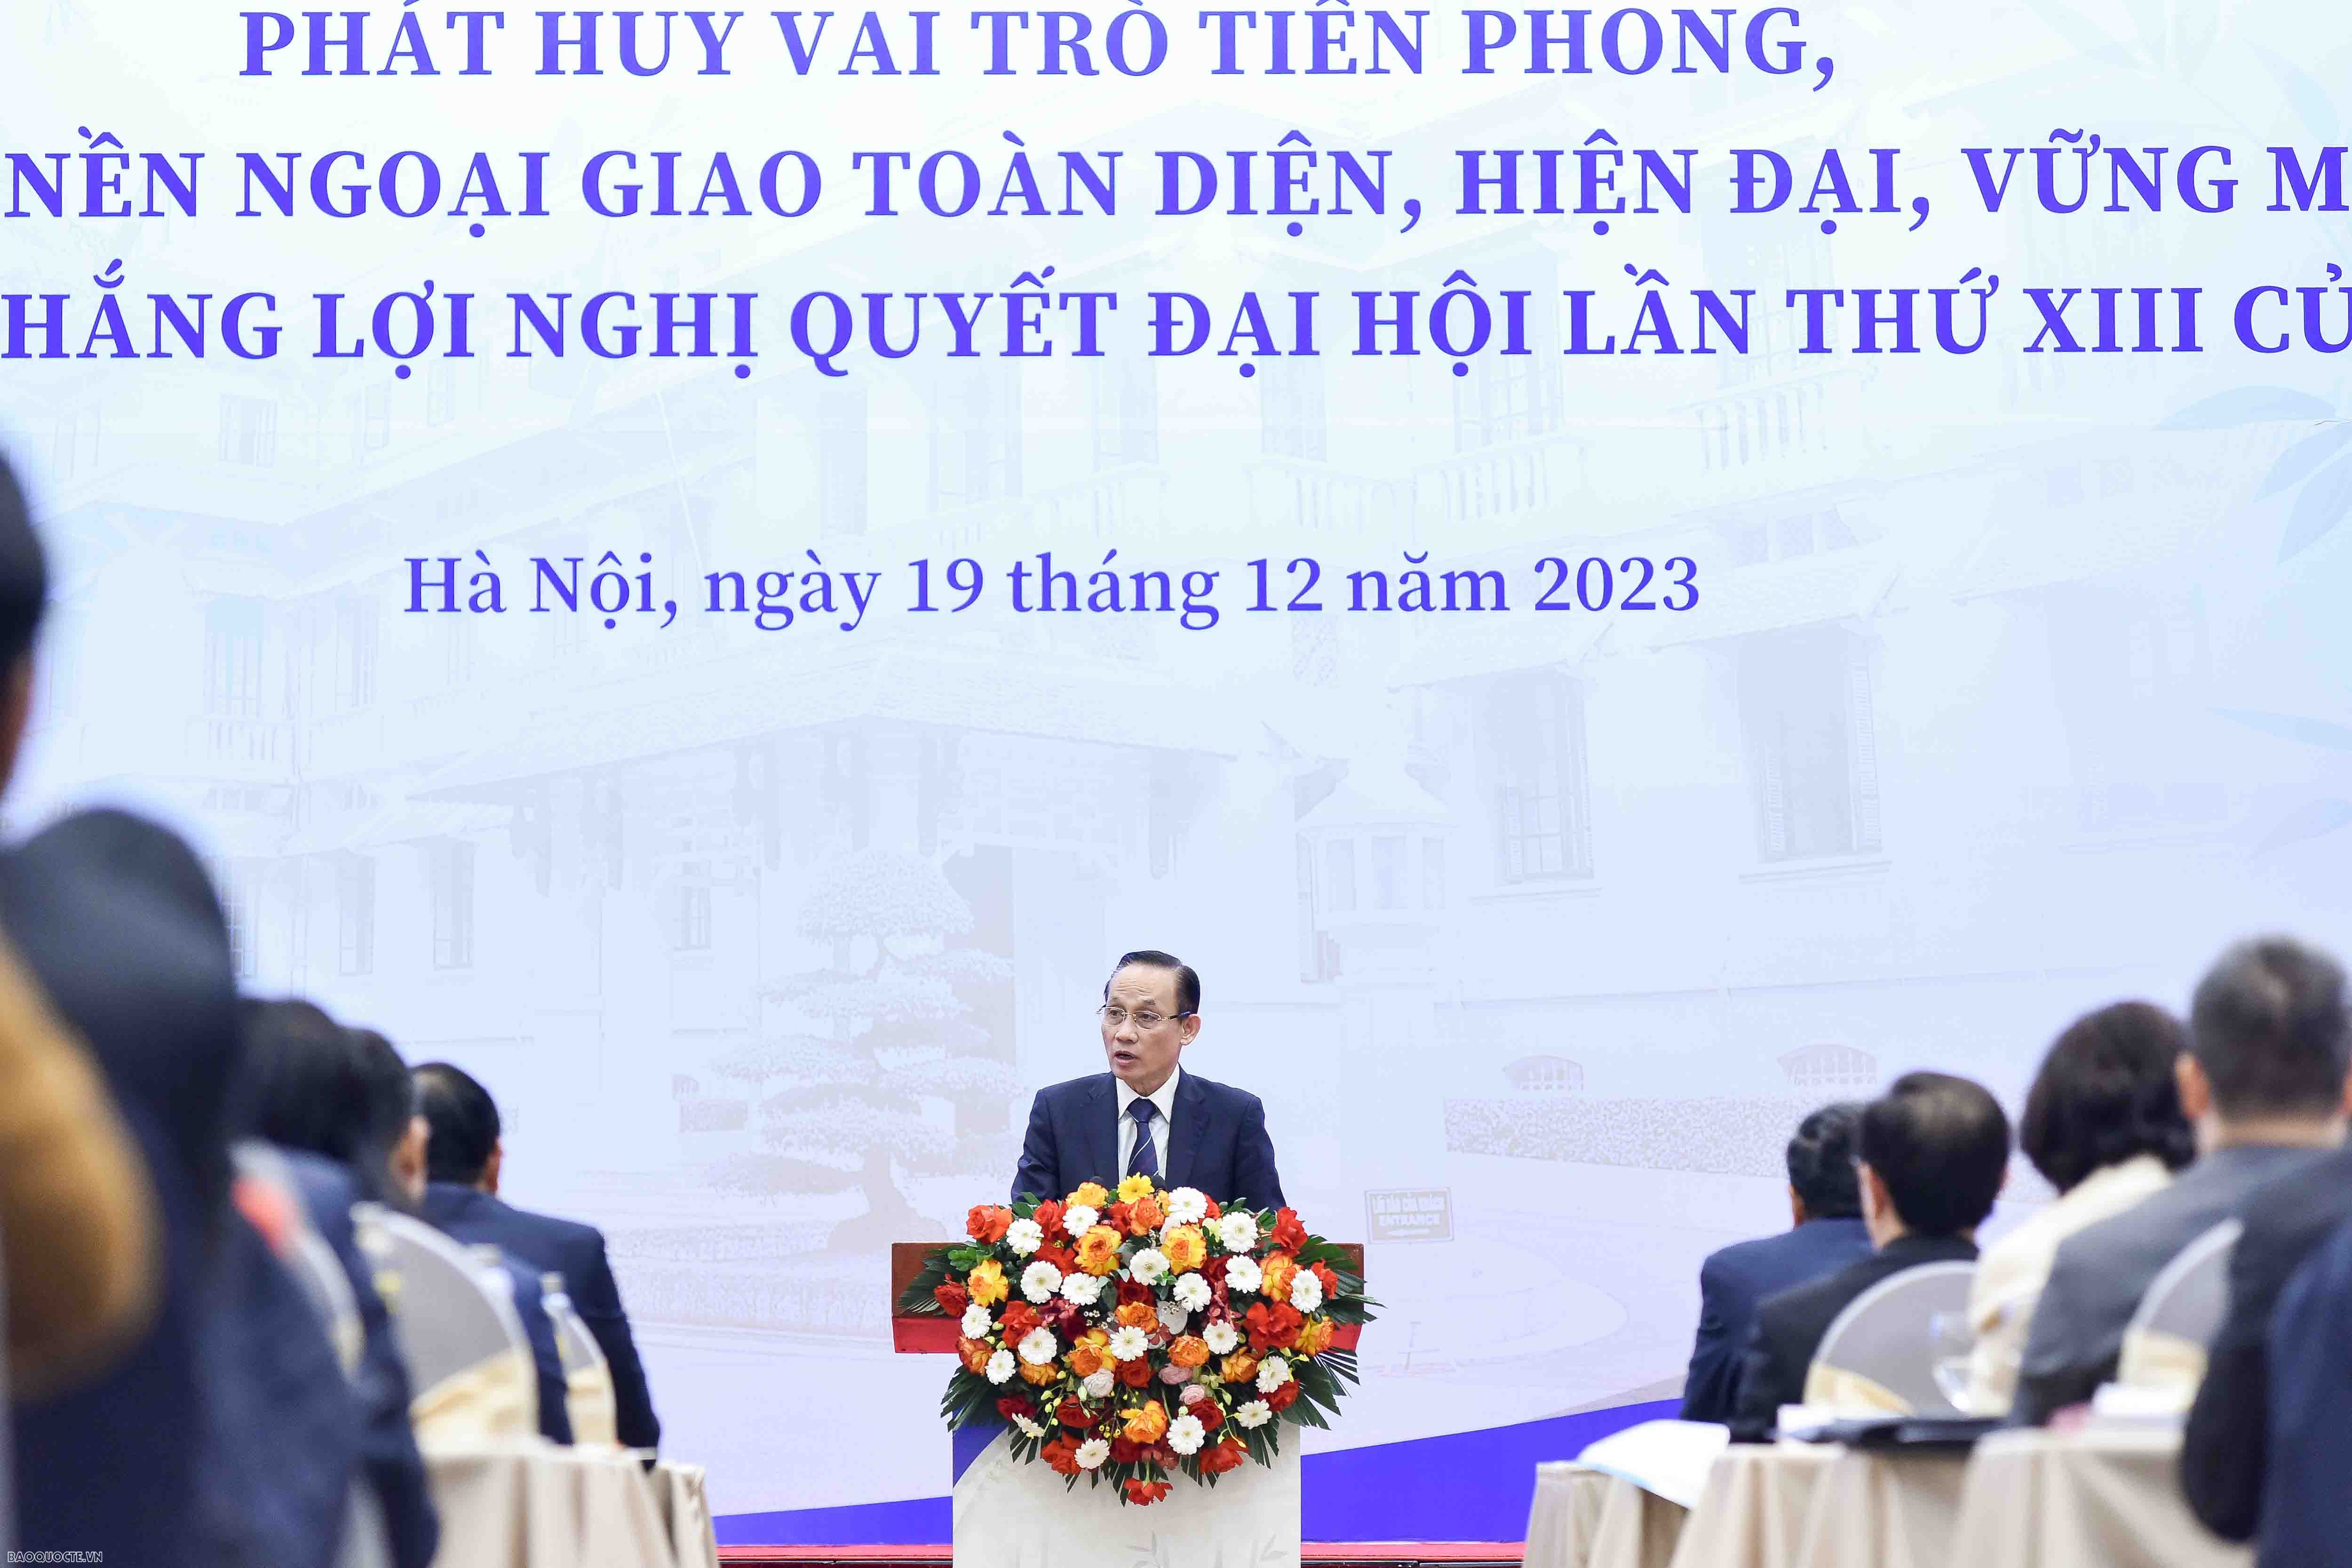 Tổng Bí thư: Tiếp tục đổi mới, phát triển nền ngoại giao mang đậm bản sắc "cây tre Việt Nam" - Ảnh 3